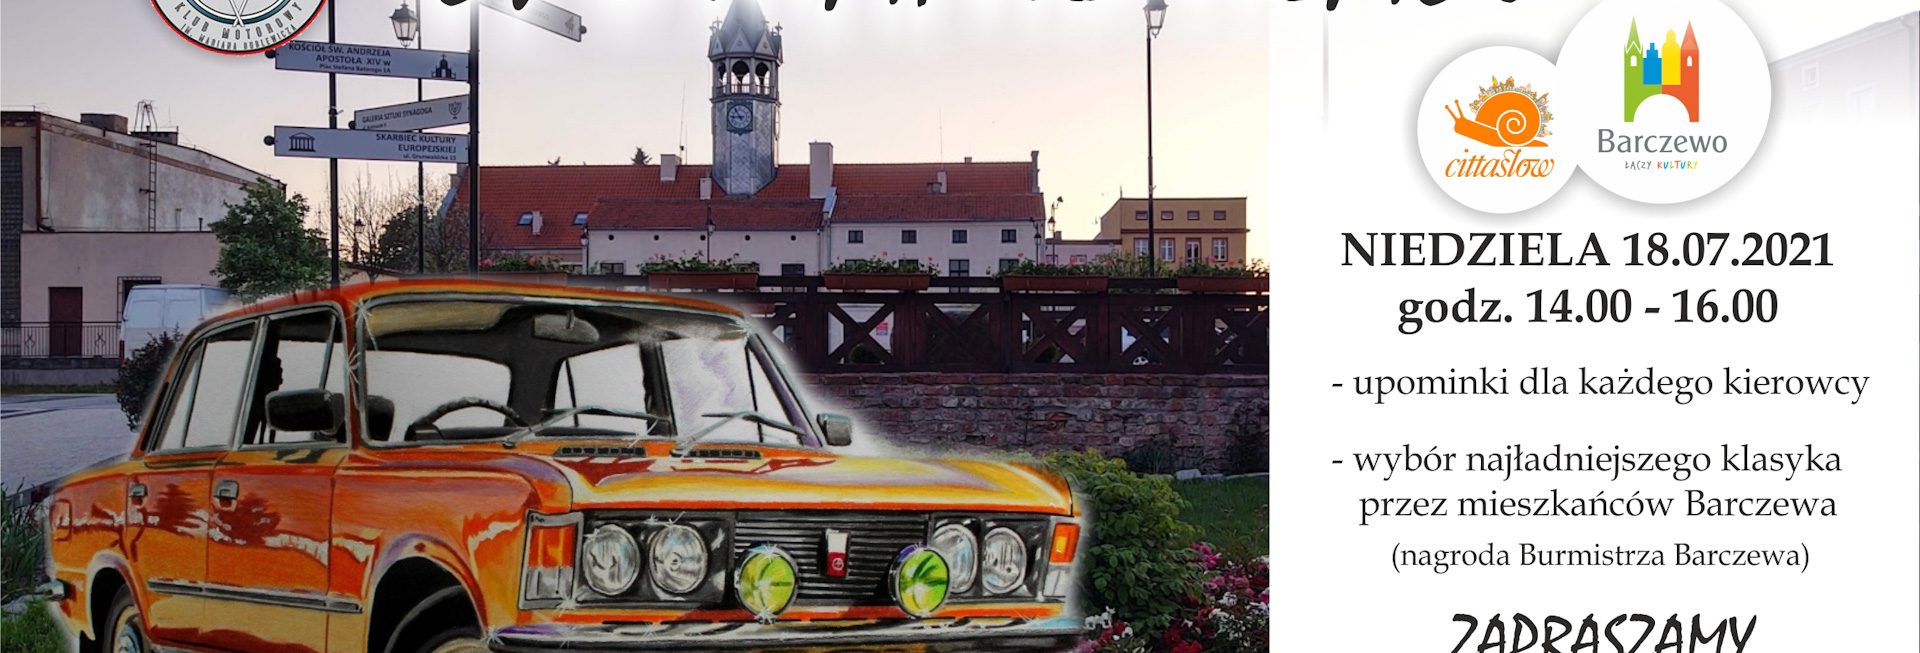 Plakat graficzny zapraszający do Barczewa na Zjazd i Spotkanie Klasyków - Barczewo 2021. Na plakacie zdjęcie dużego Fiata 125p oraz program imprezy.